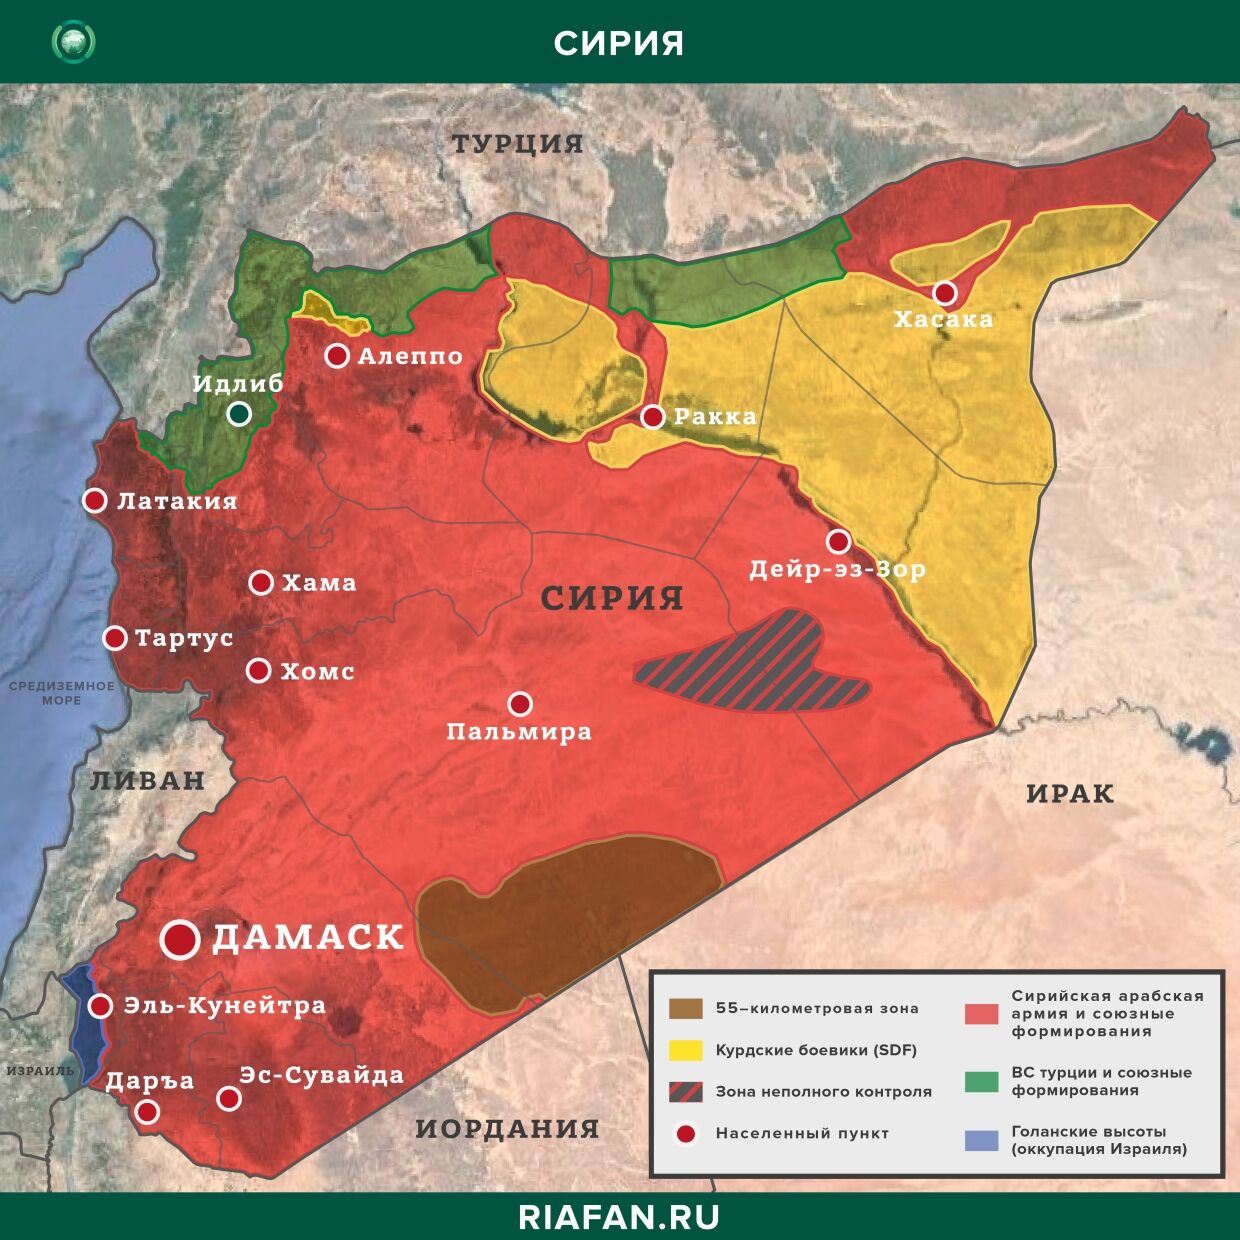 Noticias de Siria 7 Abril 12.30: в Дейр-эз-Зоре погиб американский военнослужащий, в Алеппо ликвидированы 9 боевиков YPG